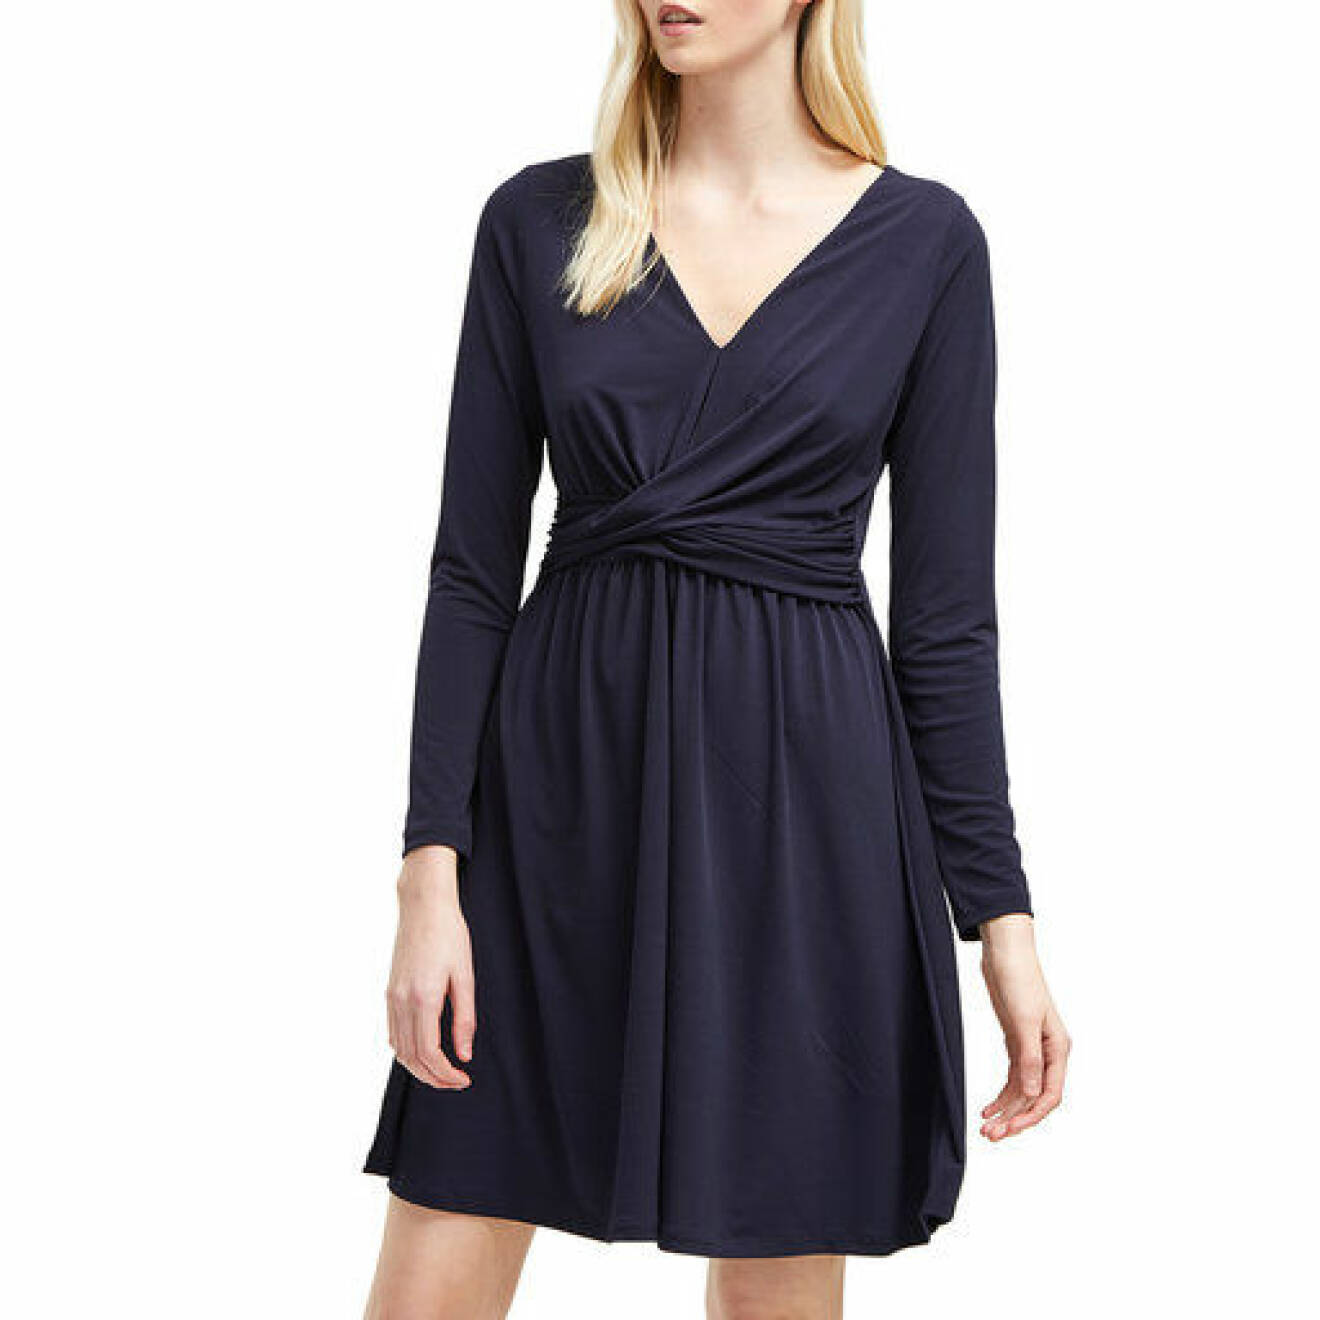 En bild på klänningen French Connection – Alexia Crepe Jersey Dress som finns att köpa på Åhléns.